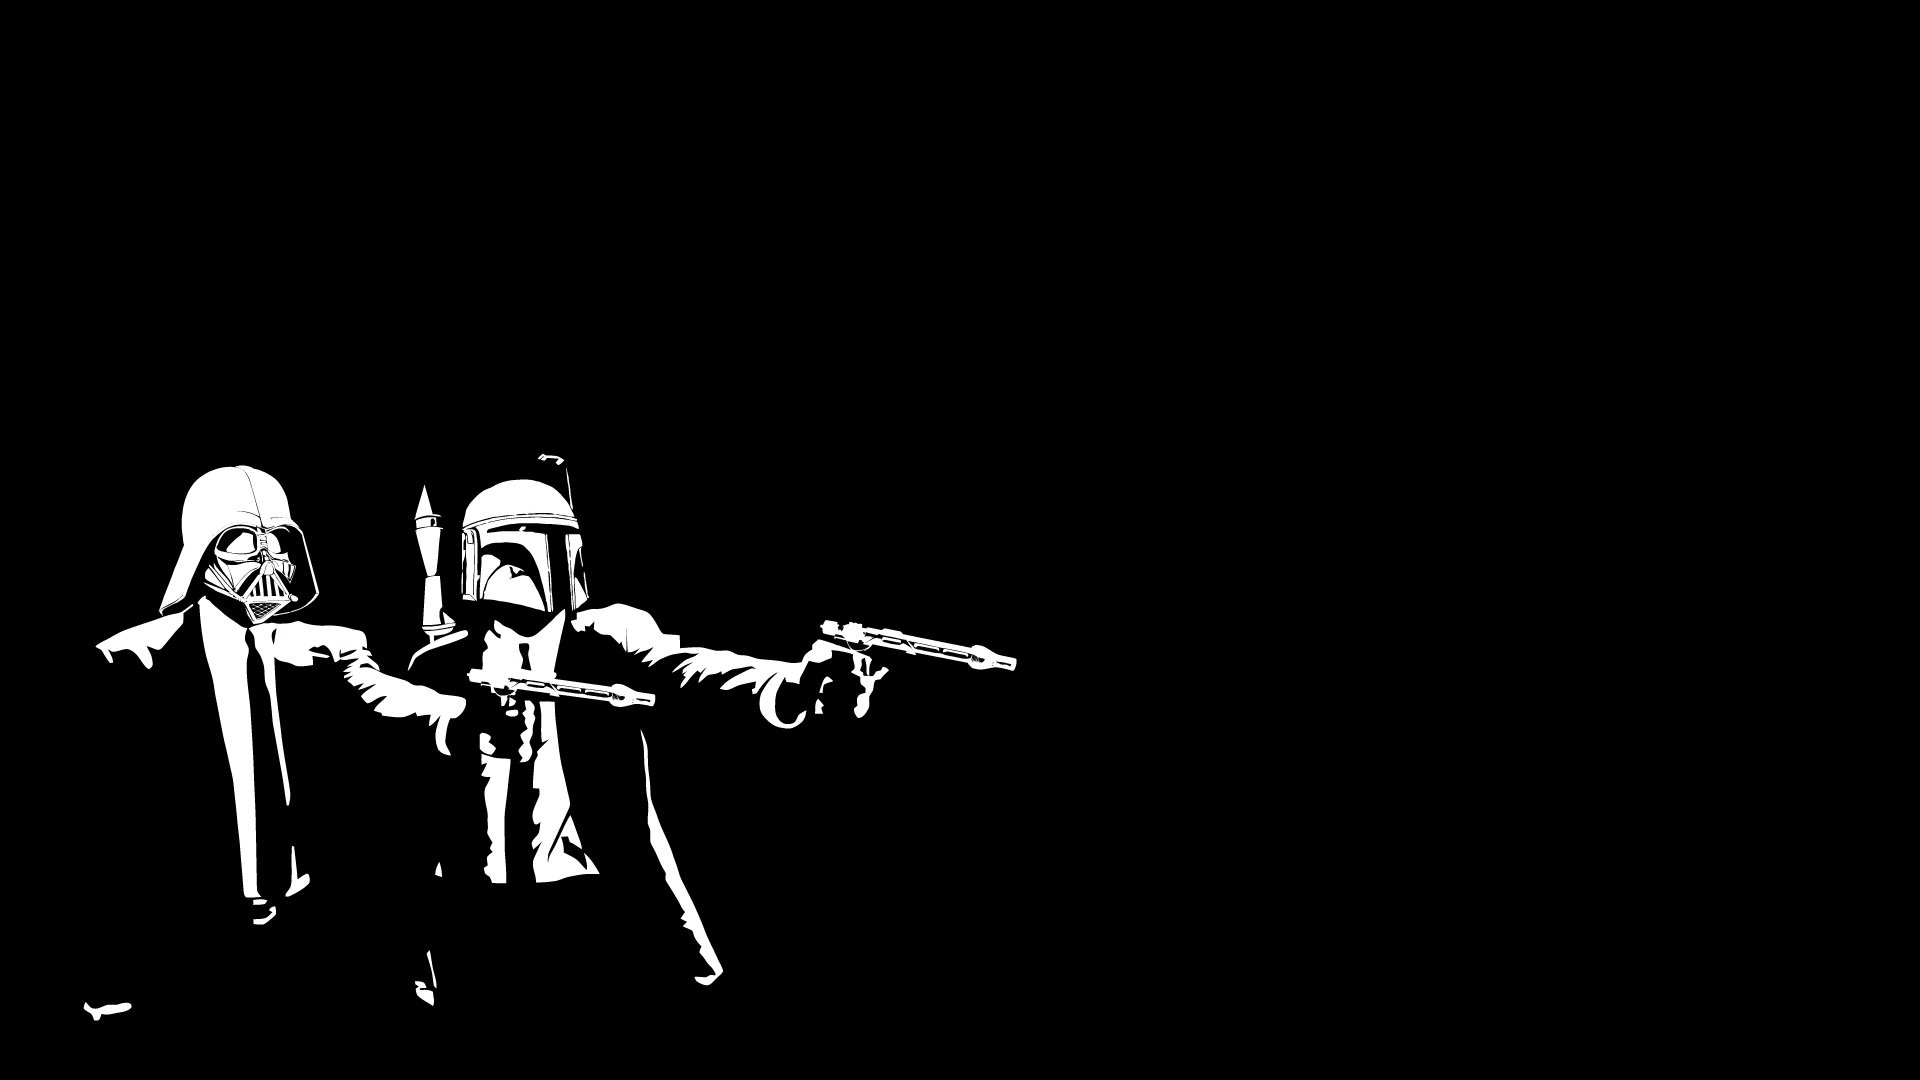 Wars Darth Vader Boba Fett The Boondock Saints Wallpaper